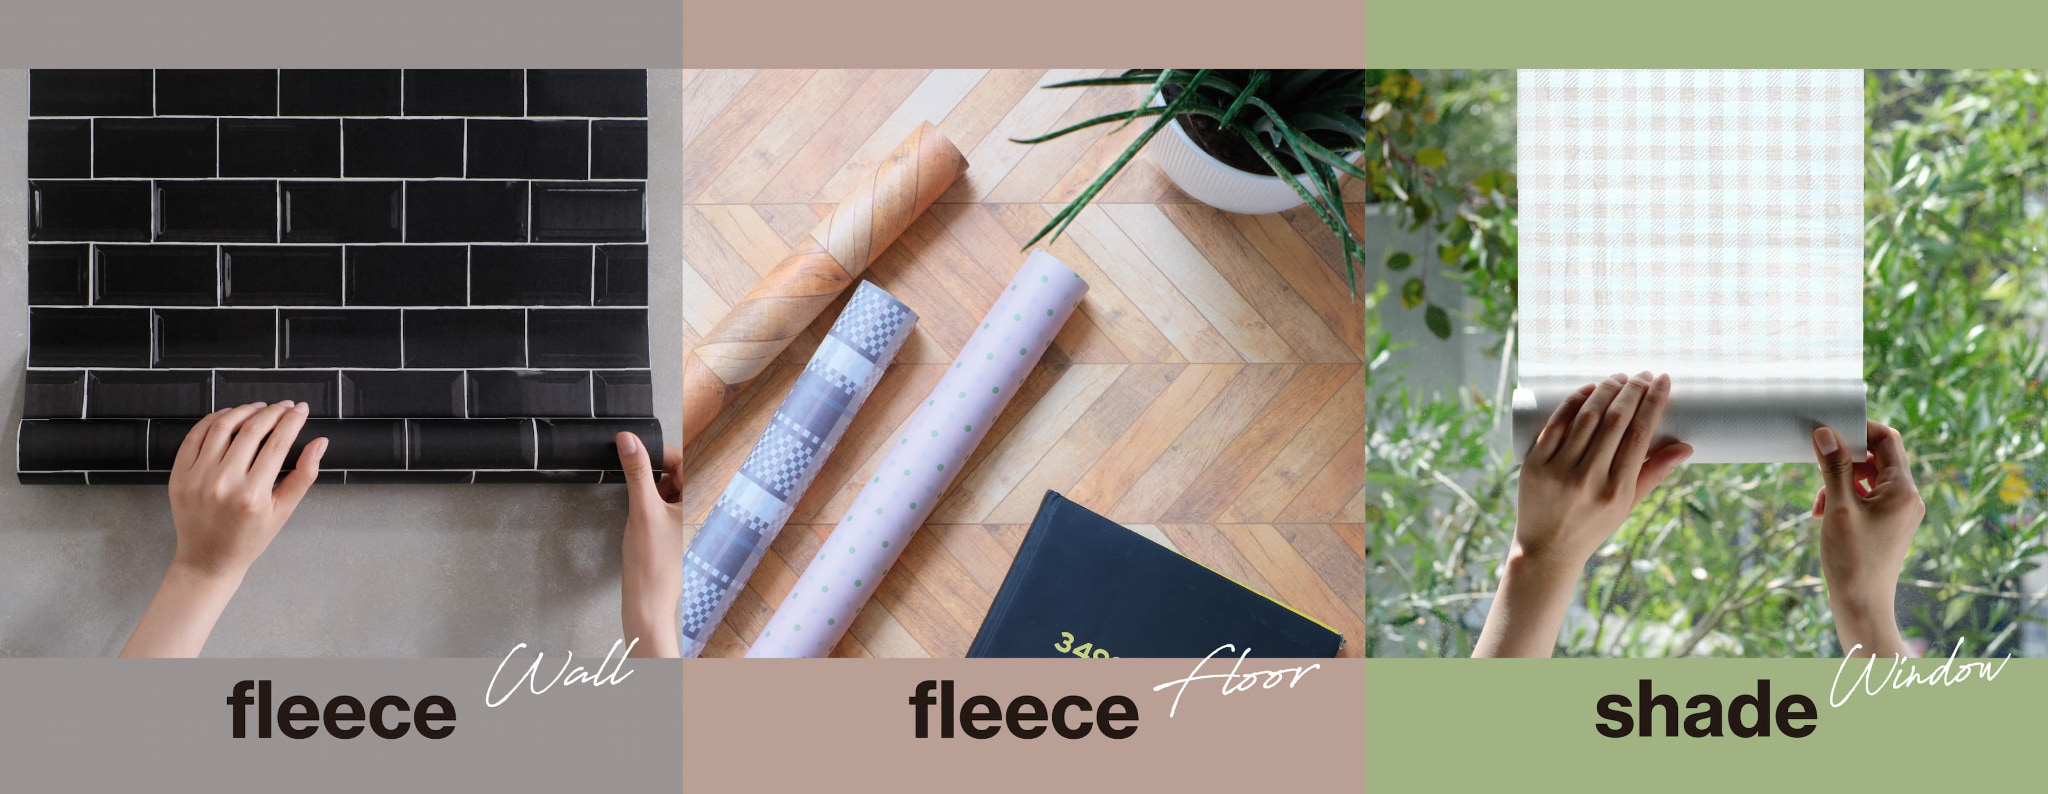 fleece Wall, fleece Floor, shade Window